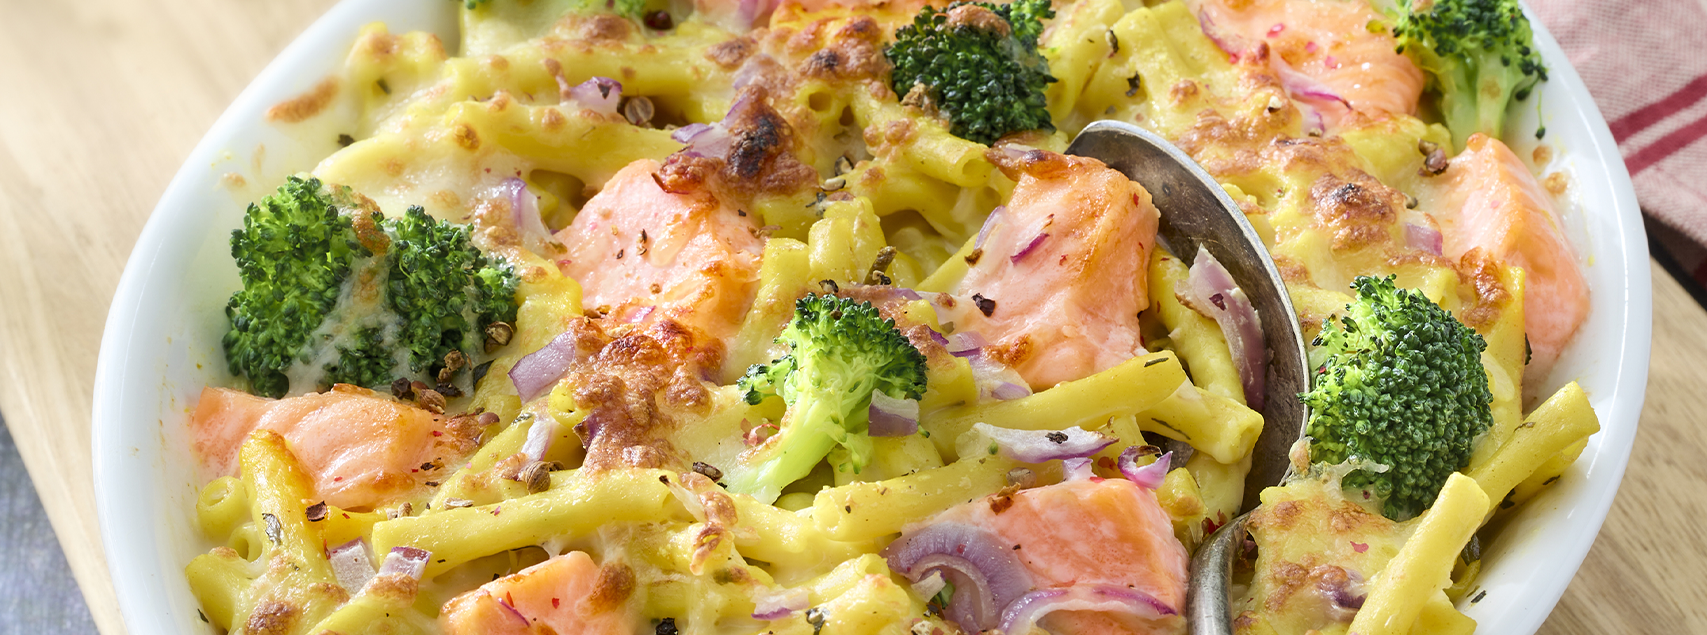 Makkaroni-Gratin mit Lachs, Brokkoli und Mozzarella – Escal Seafood